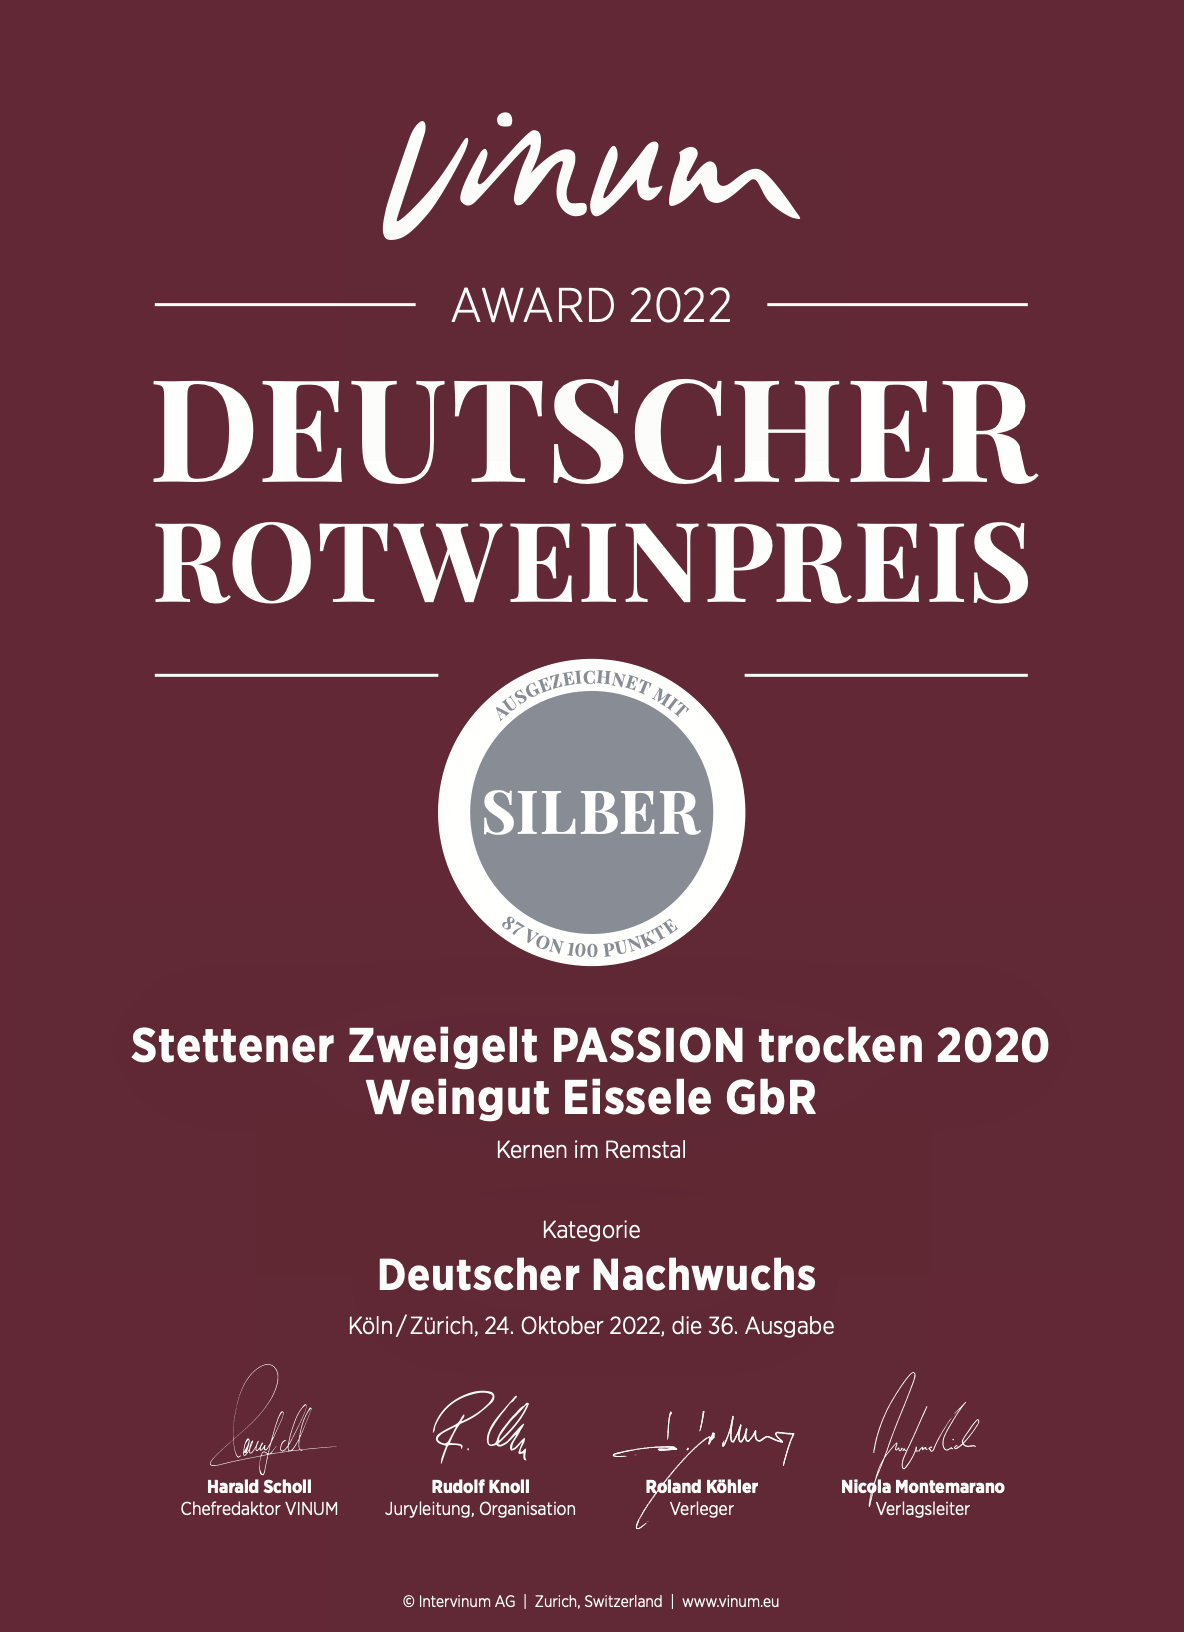 Zertifikat des deutschen Rotweinpreises. 2022 wurde das Weingut Eißele aus dem Remstal mit dem deutschen Rotweinpreis in silber für Zweigelt PASSION trocken 2020 von der Intervinum AG ausgezeichnet.